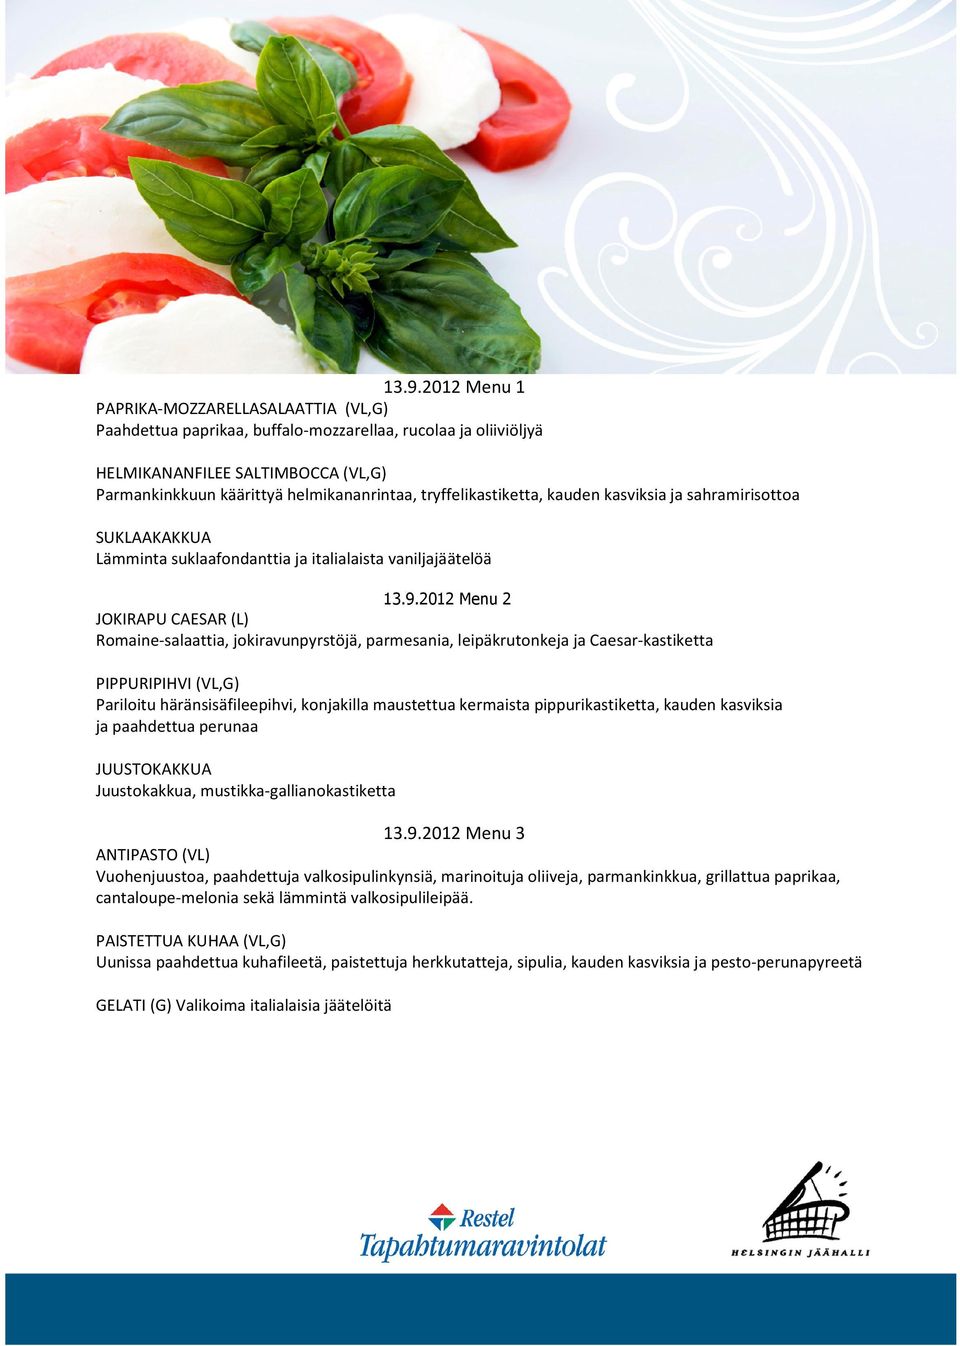 2012 Menu 2 JOKIRAPU CAESAR (L) Romaine-salaattia, jokiravunpyrstöjä, parmesania, leipäkrutonkeja ja Caesar-kastiketta PIPPURIPIHVI (VL,G) Pariloitu häränsisäfileepihvi, konjakilla maustettua